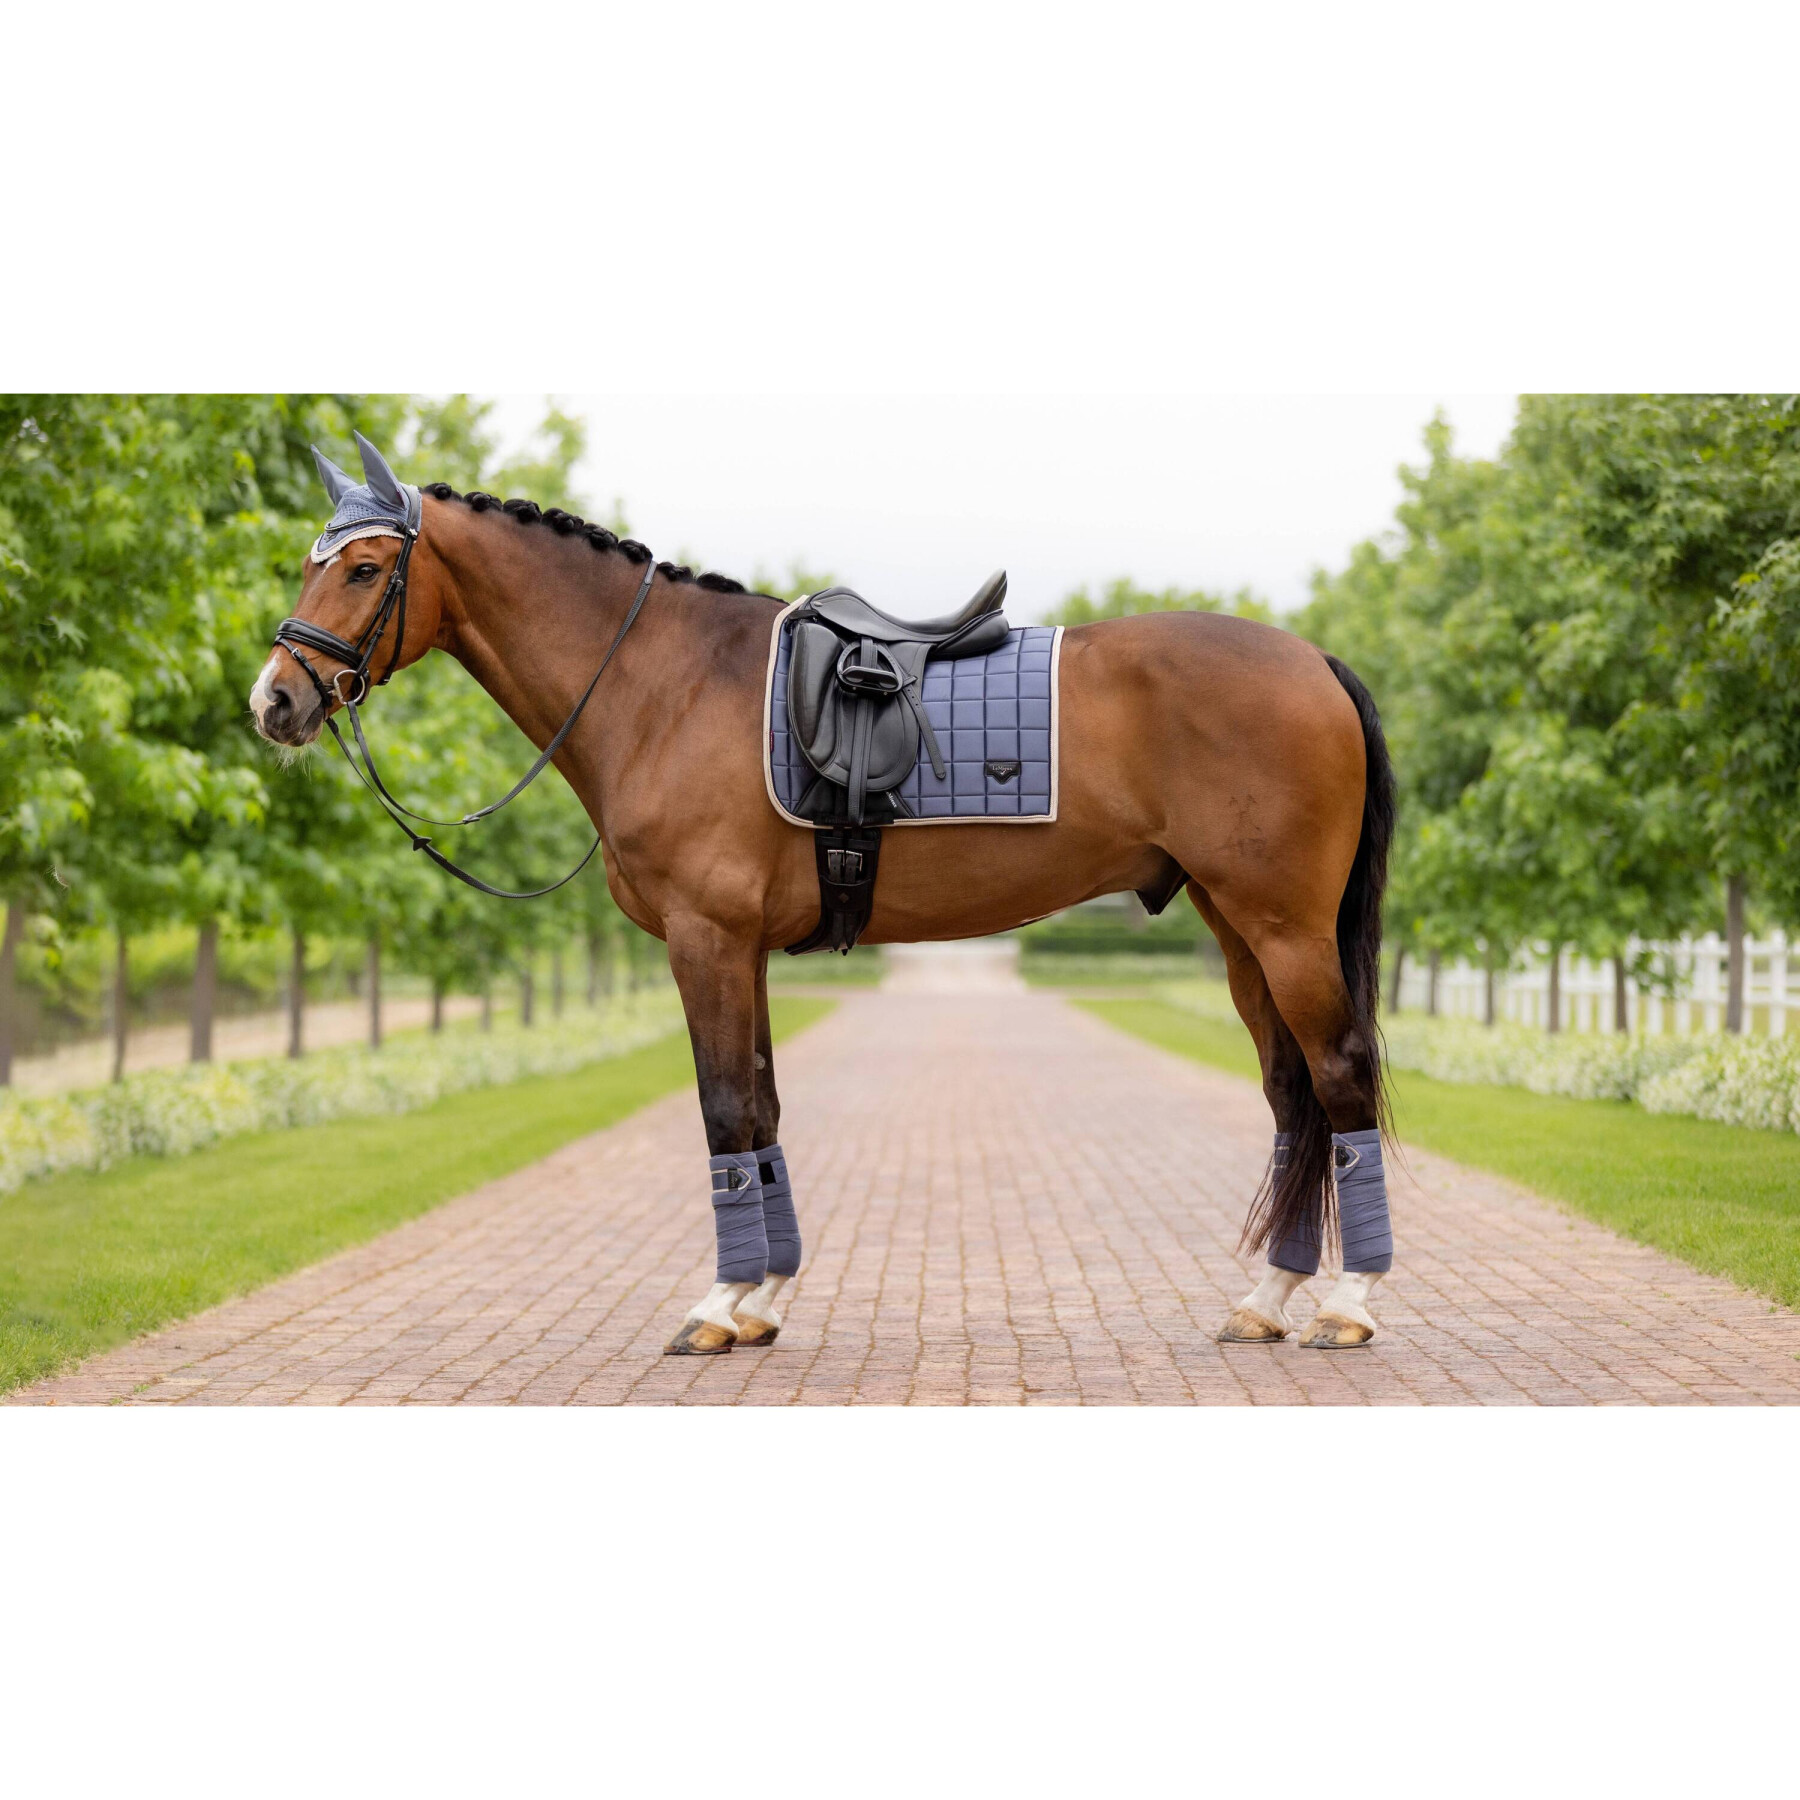 Dressage mat for horses LeMieux Loire Classic